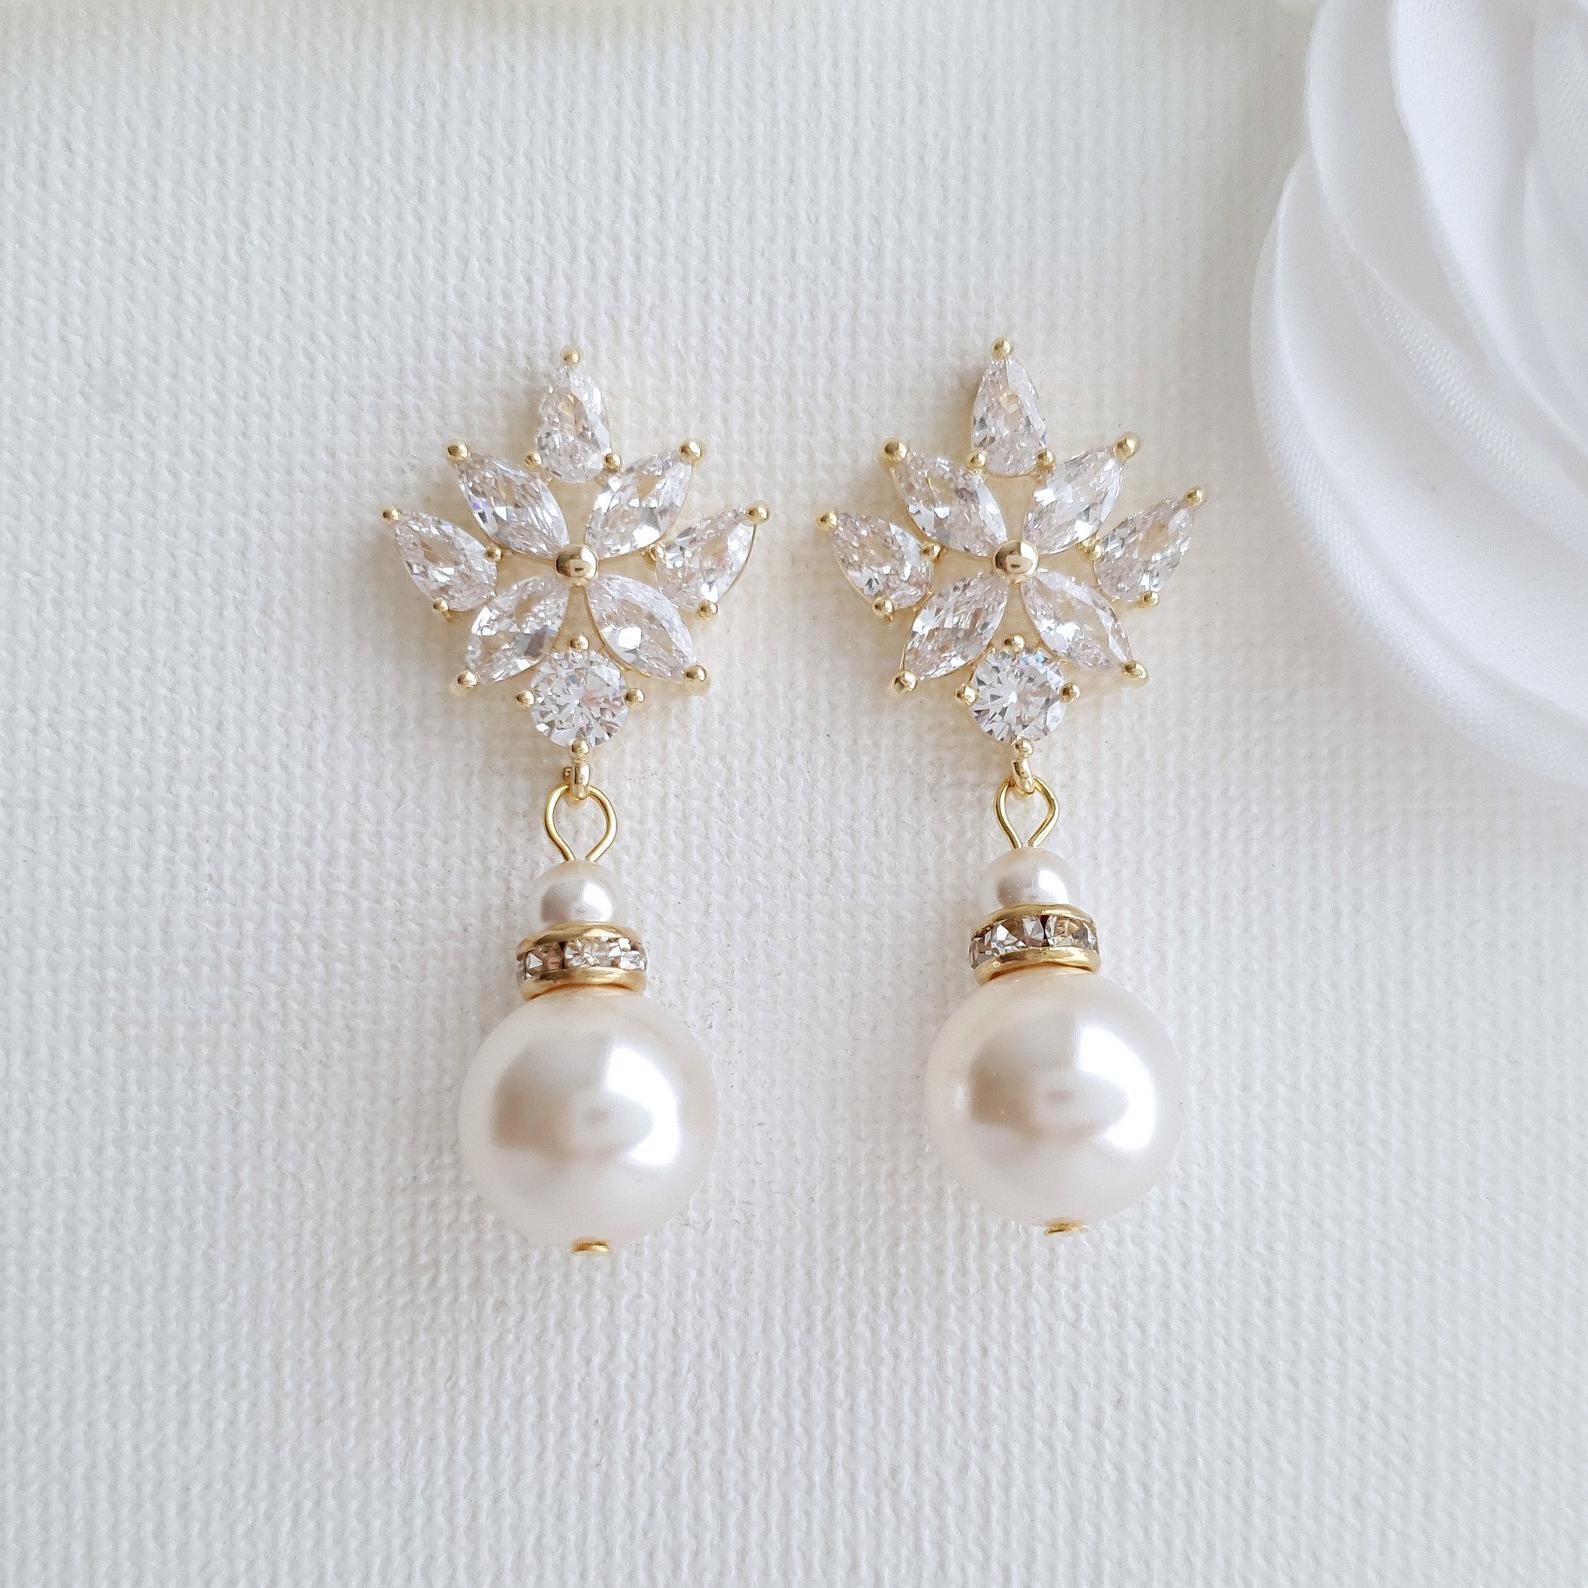 Hooked Pearl Earrings / Heike Grebenstein Fine Jewelry